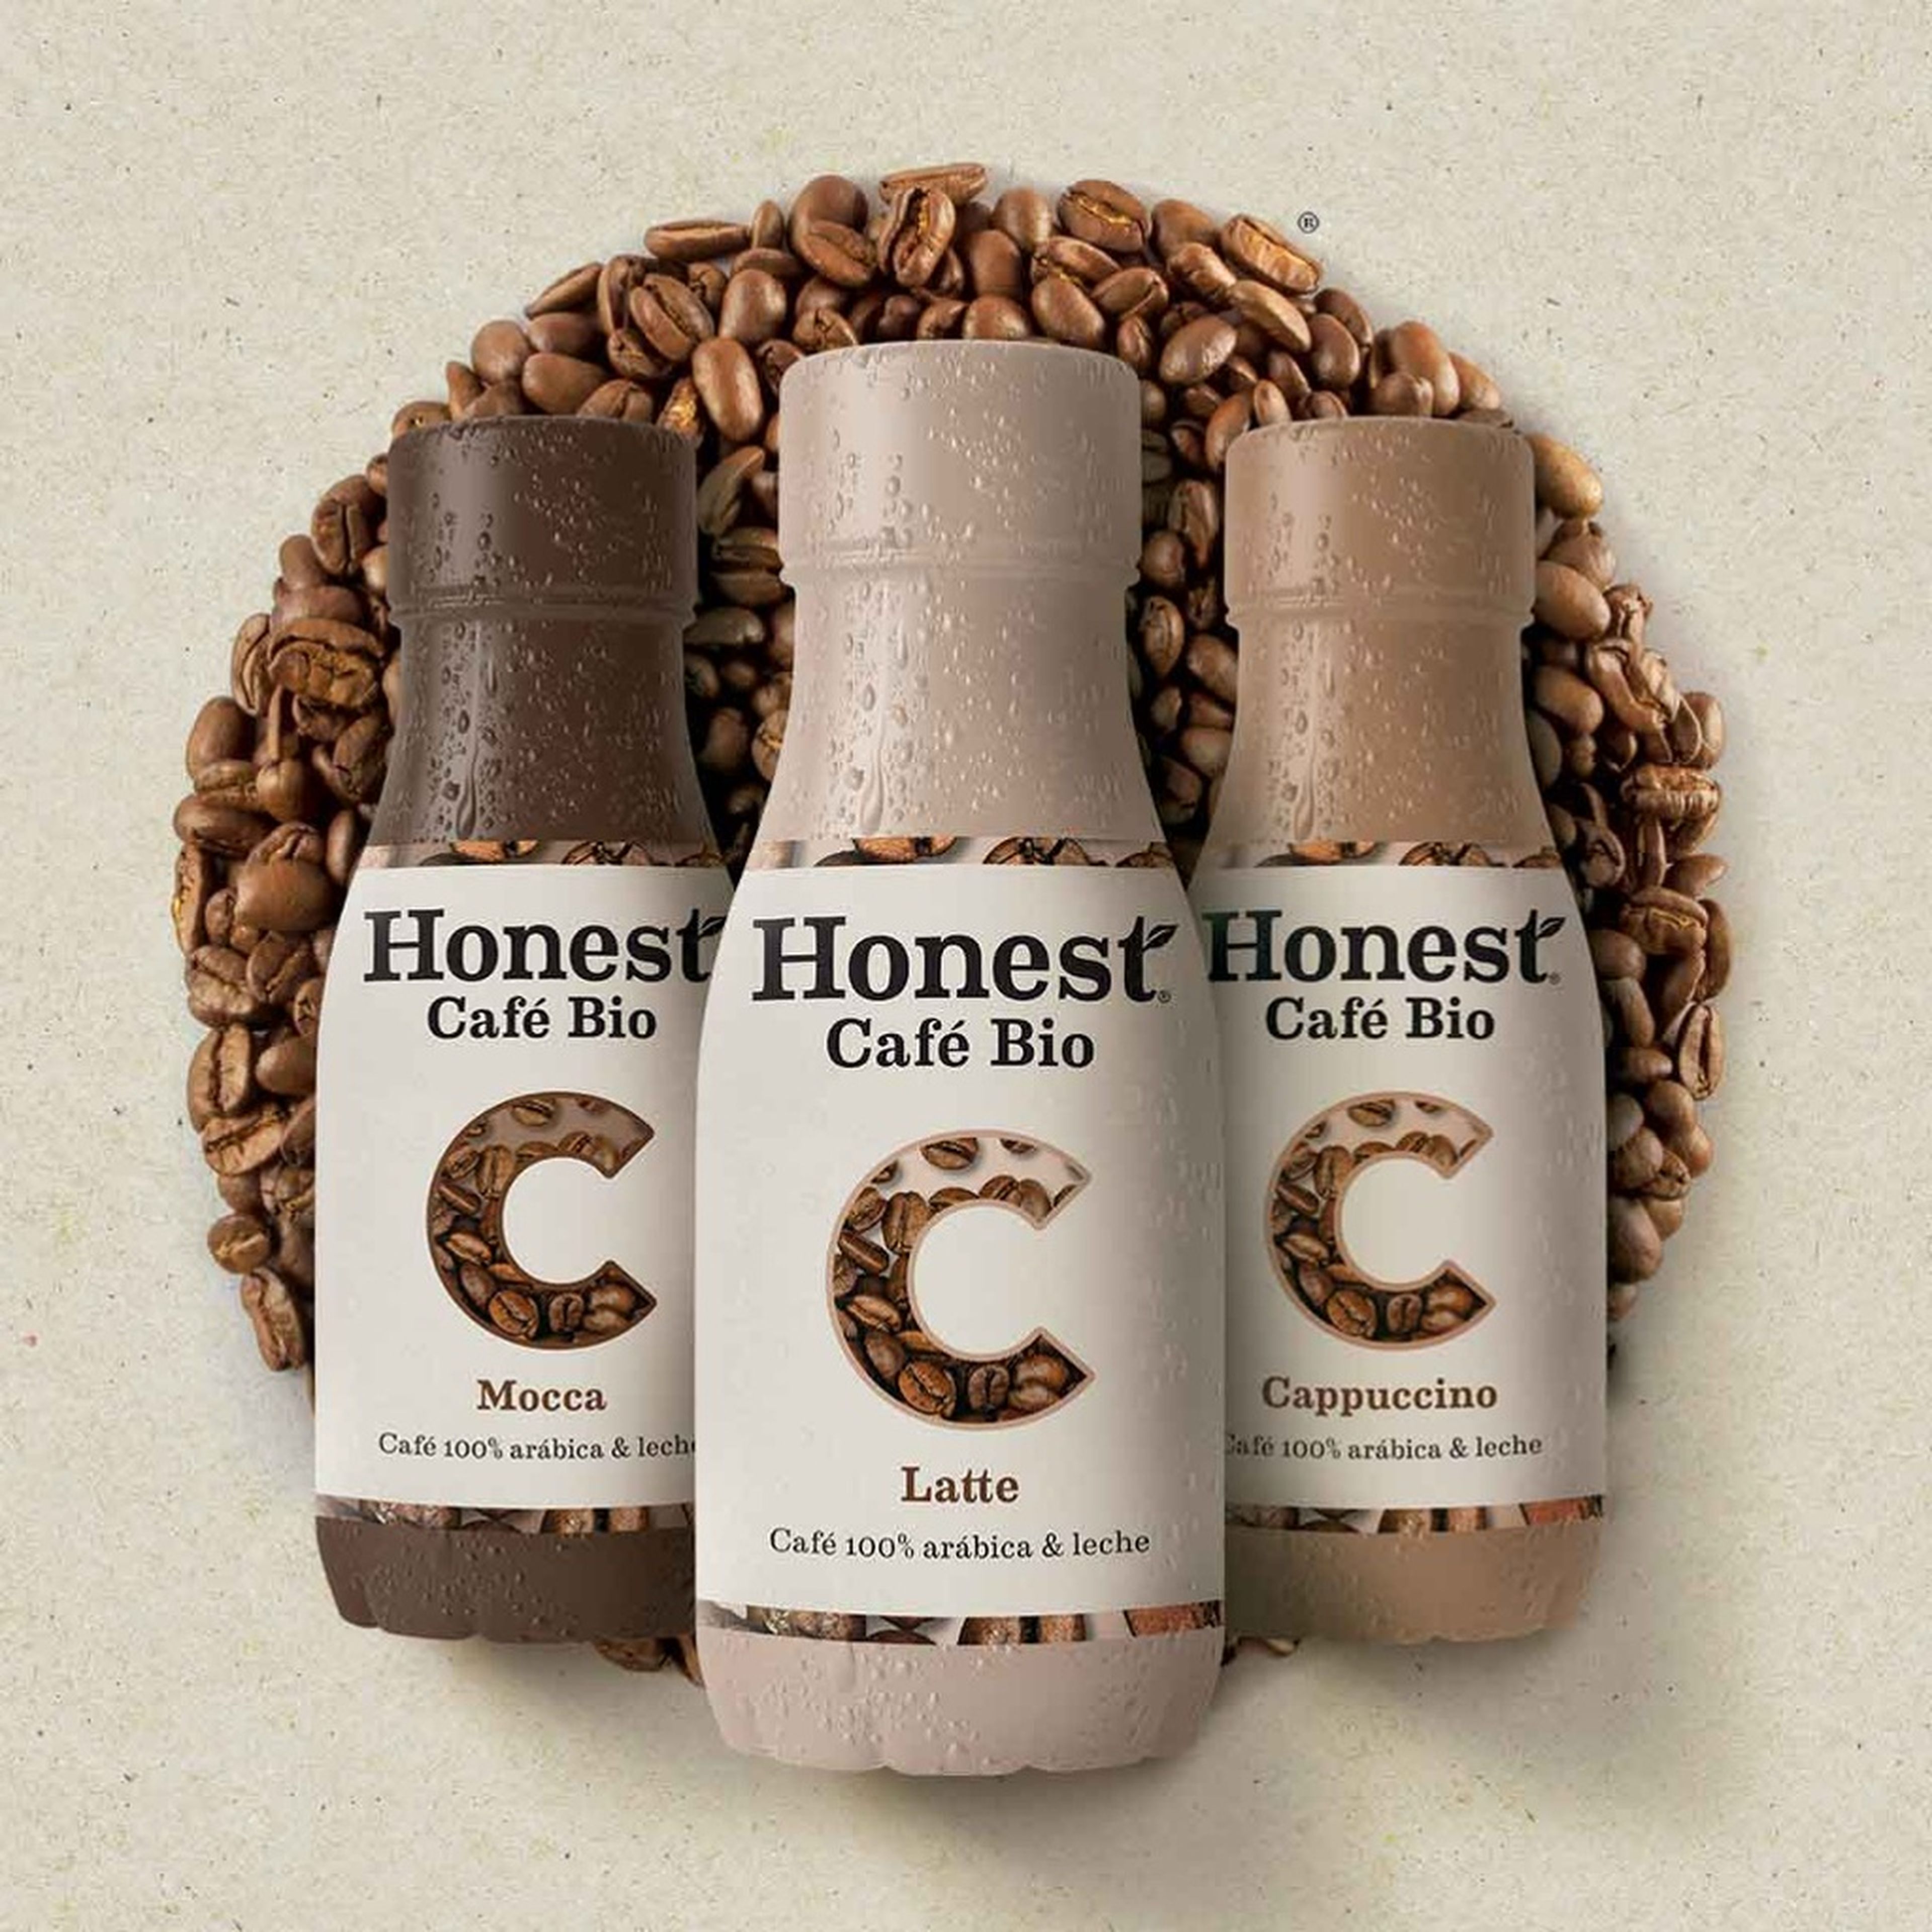 España es el primer país en comercializar los cafés Honest a nivel mundial